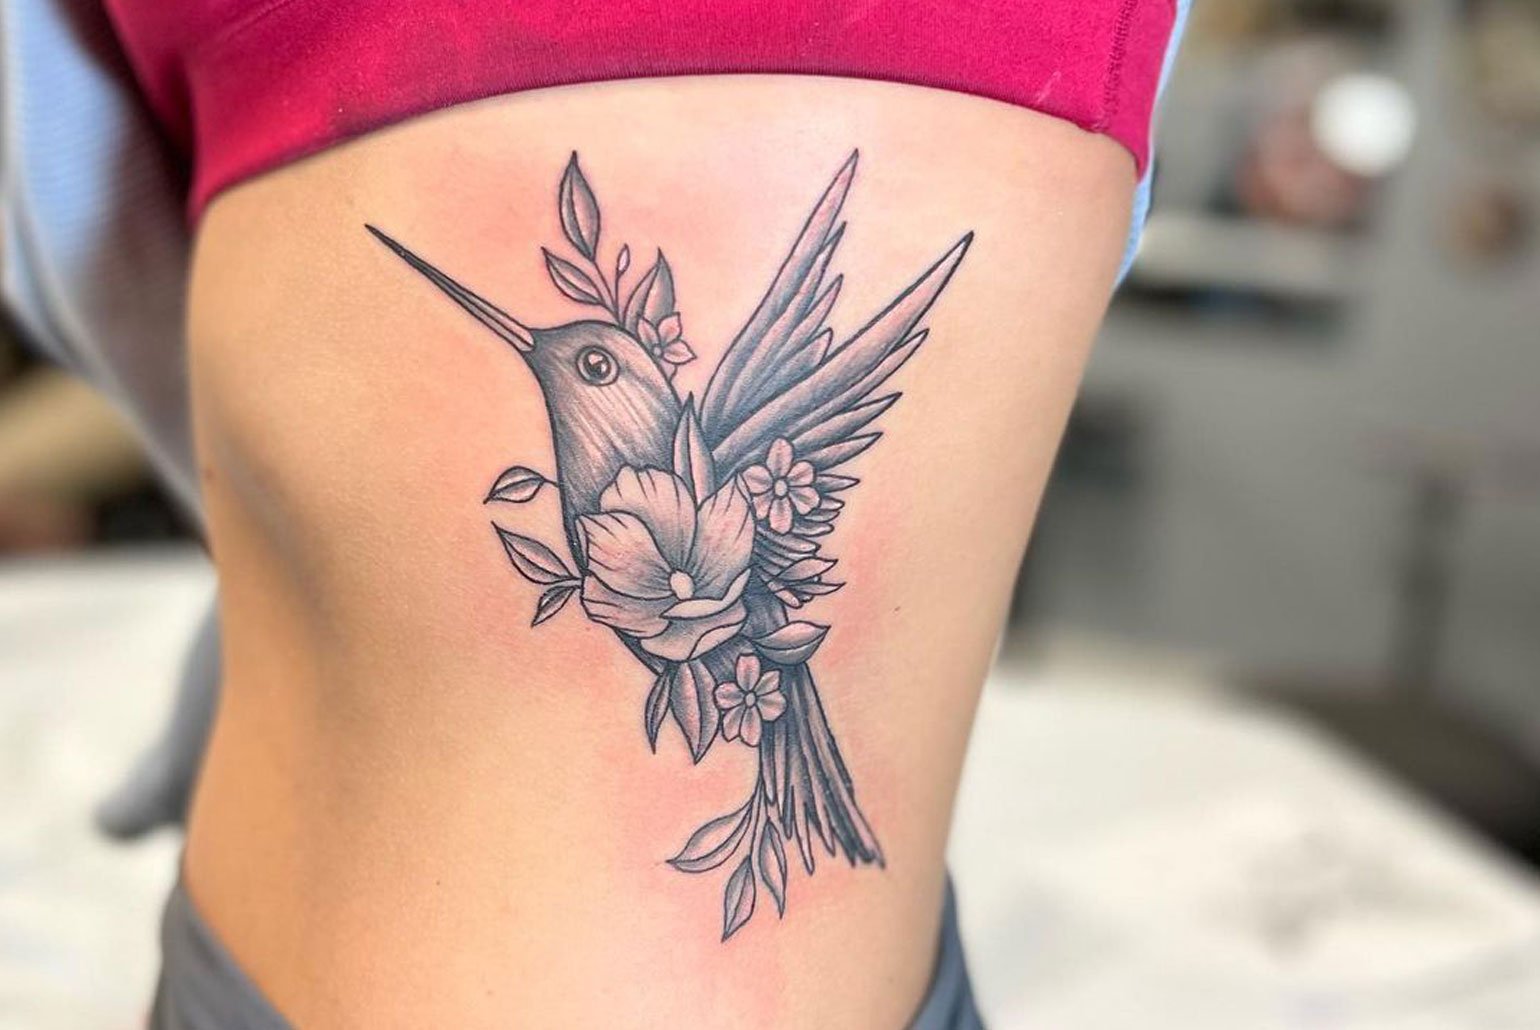 hummingbird-tattoos-mainart.jpg